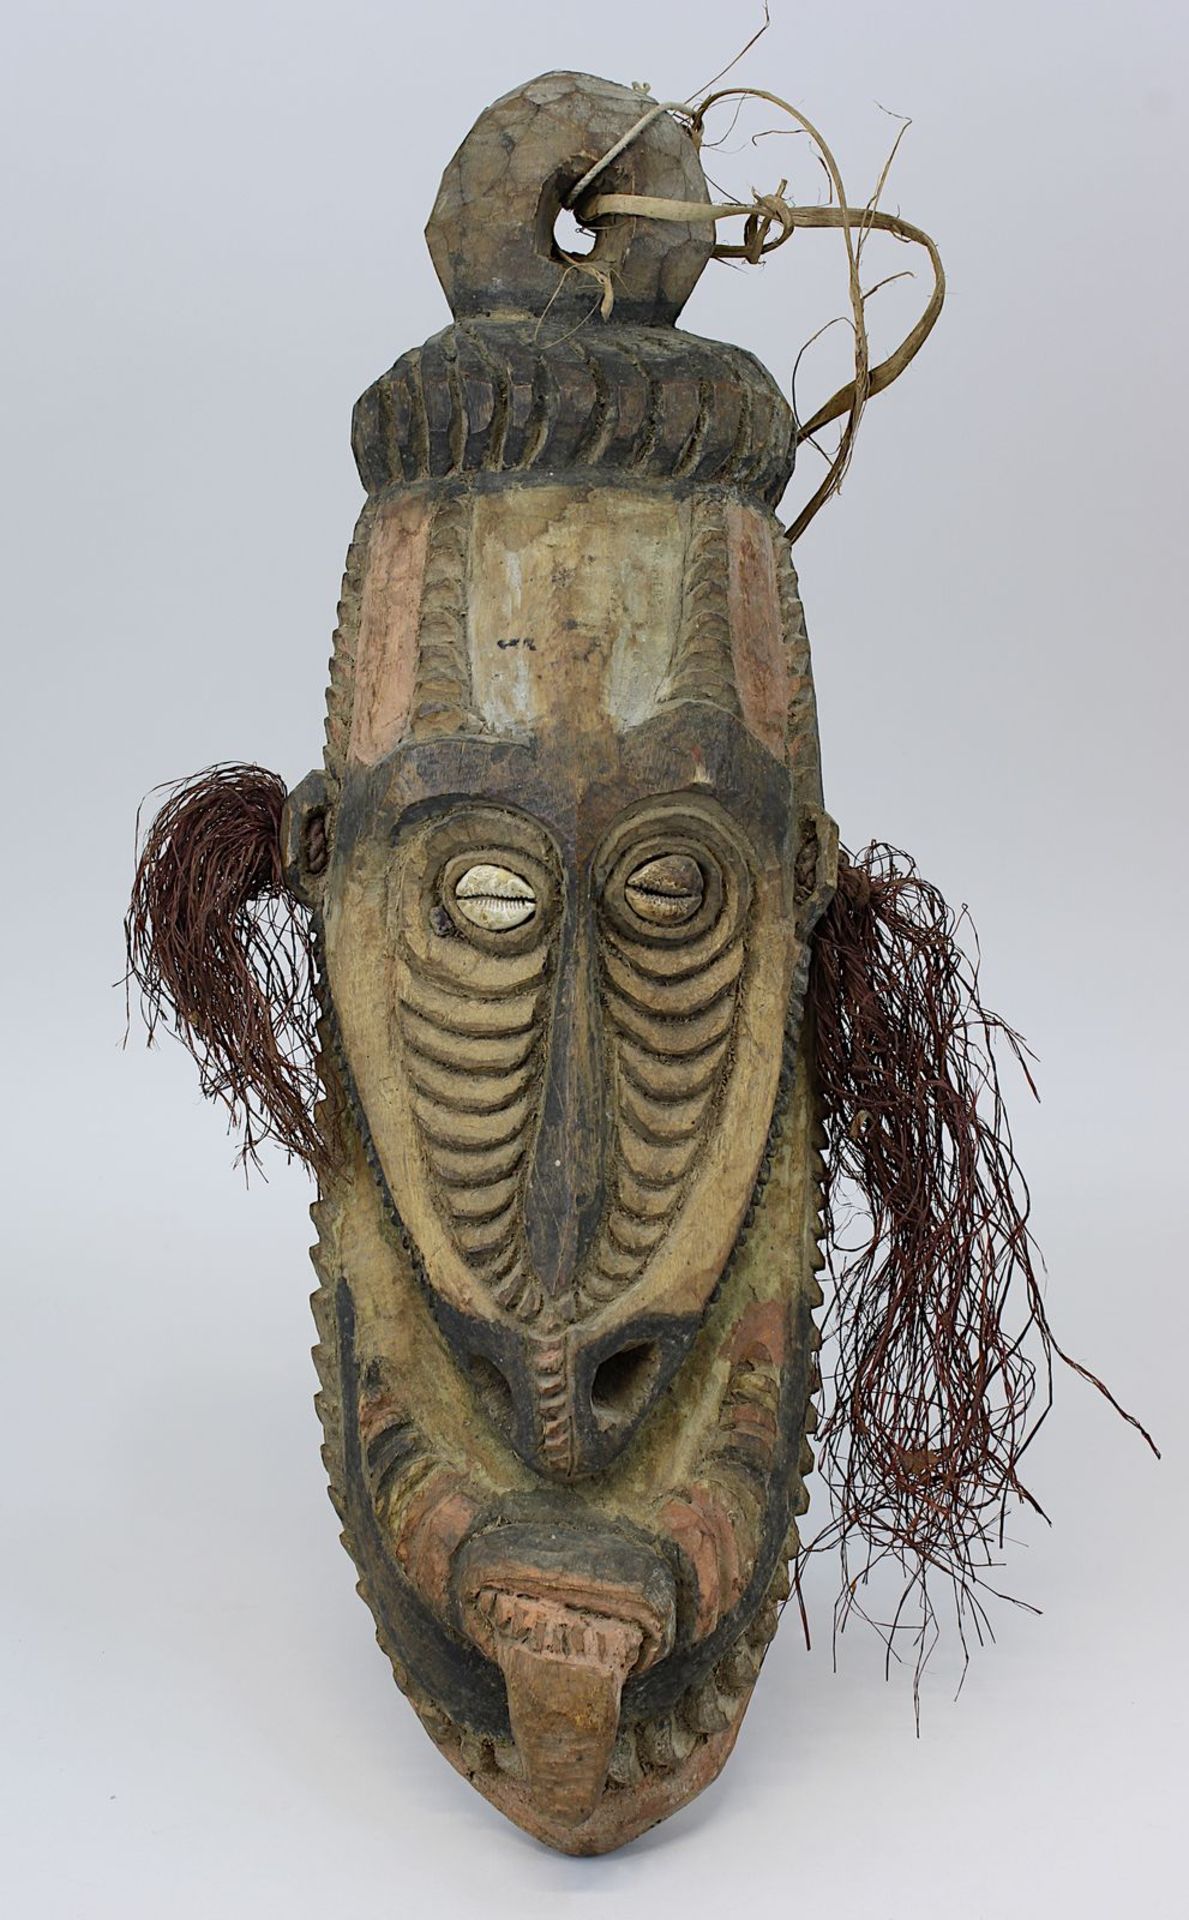 Maske vom Sepik, Papua-Neuguinea, Gesichtsmaske mit überlanger eingerollter Nase, Holz geschnitzt